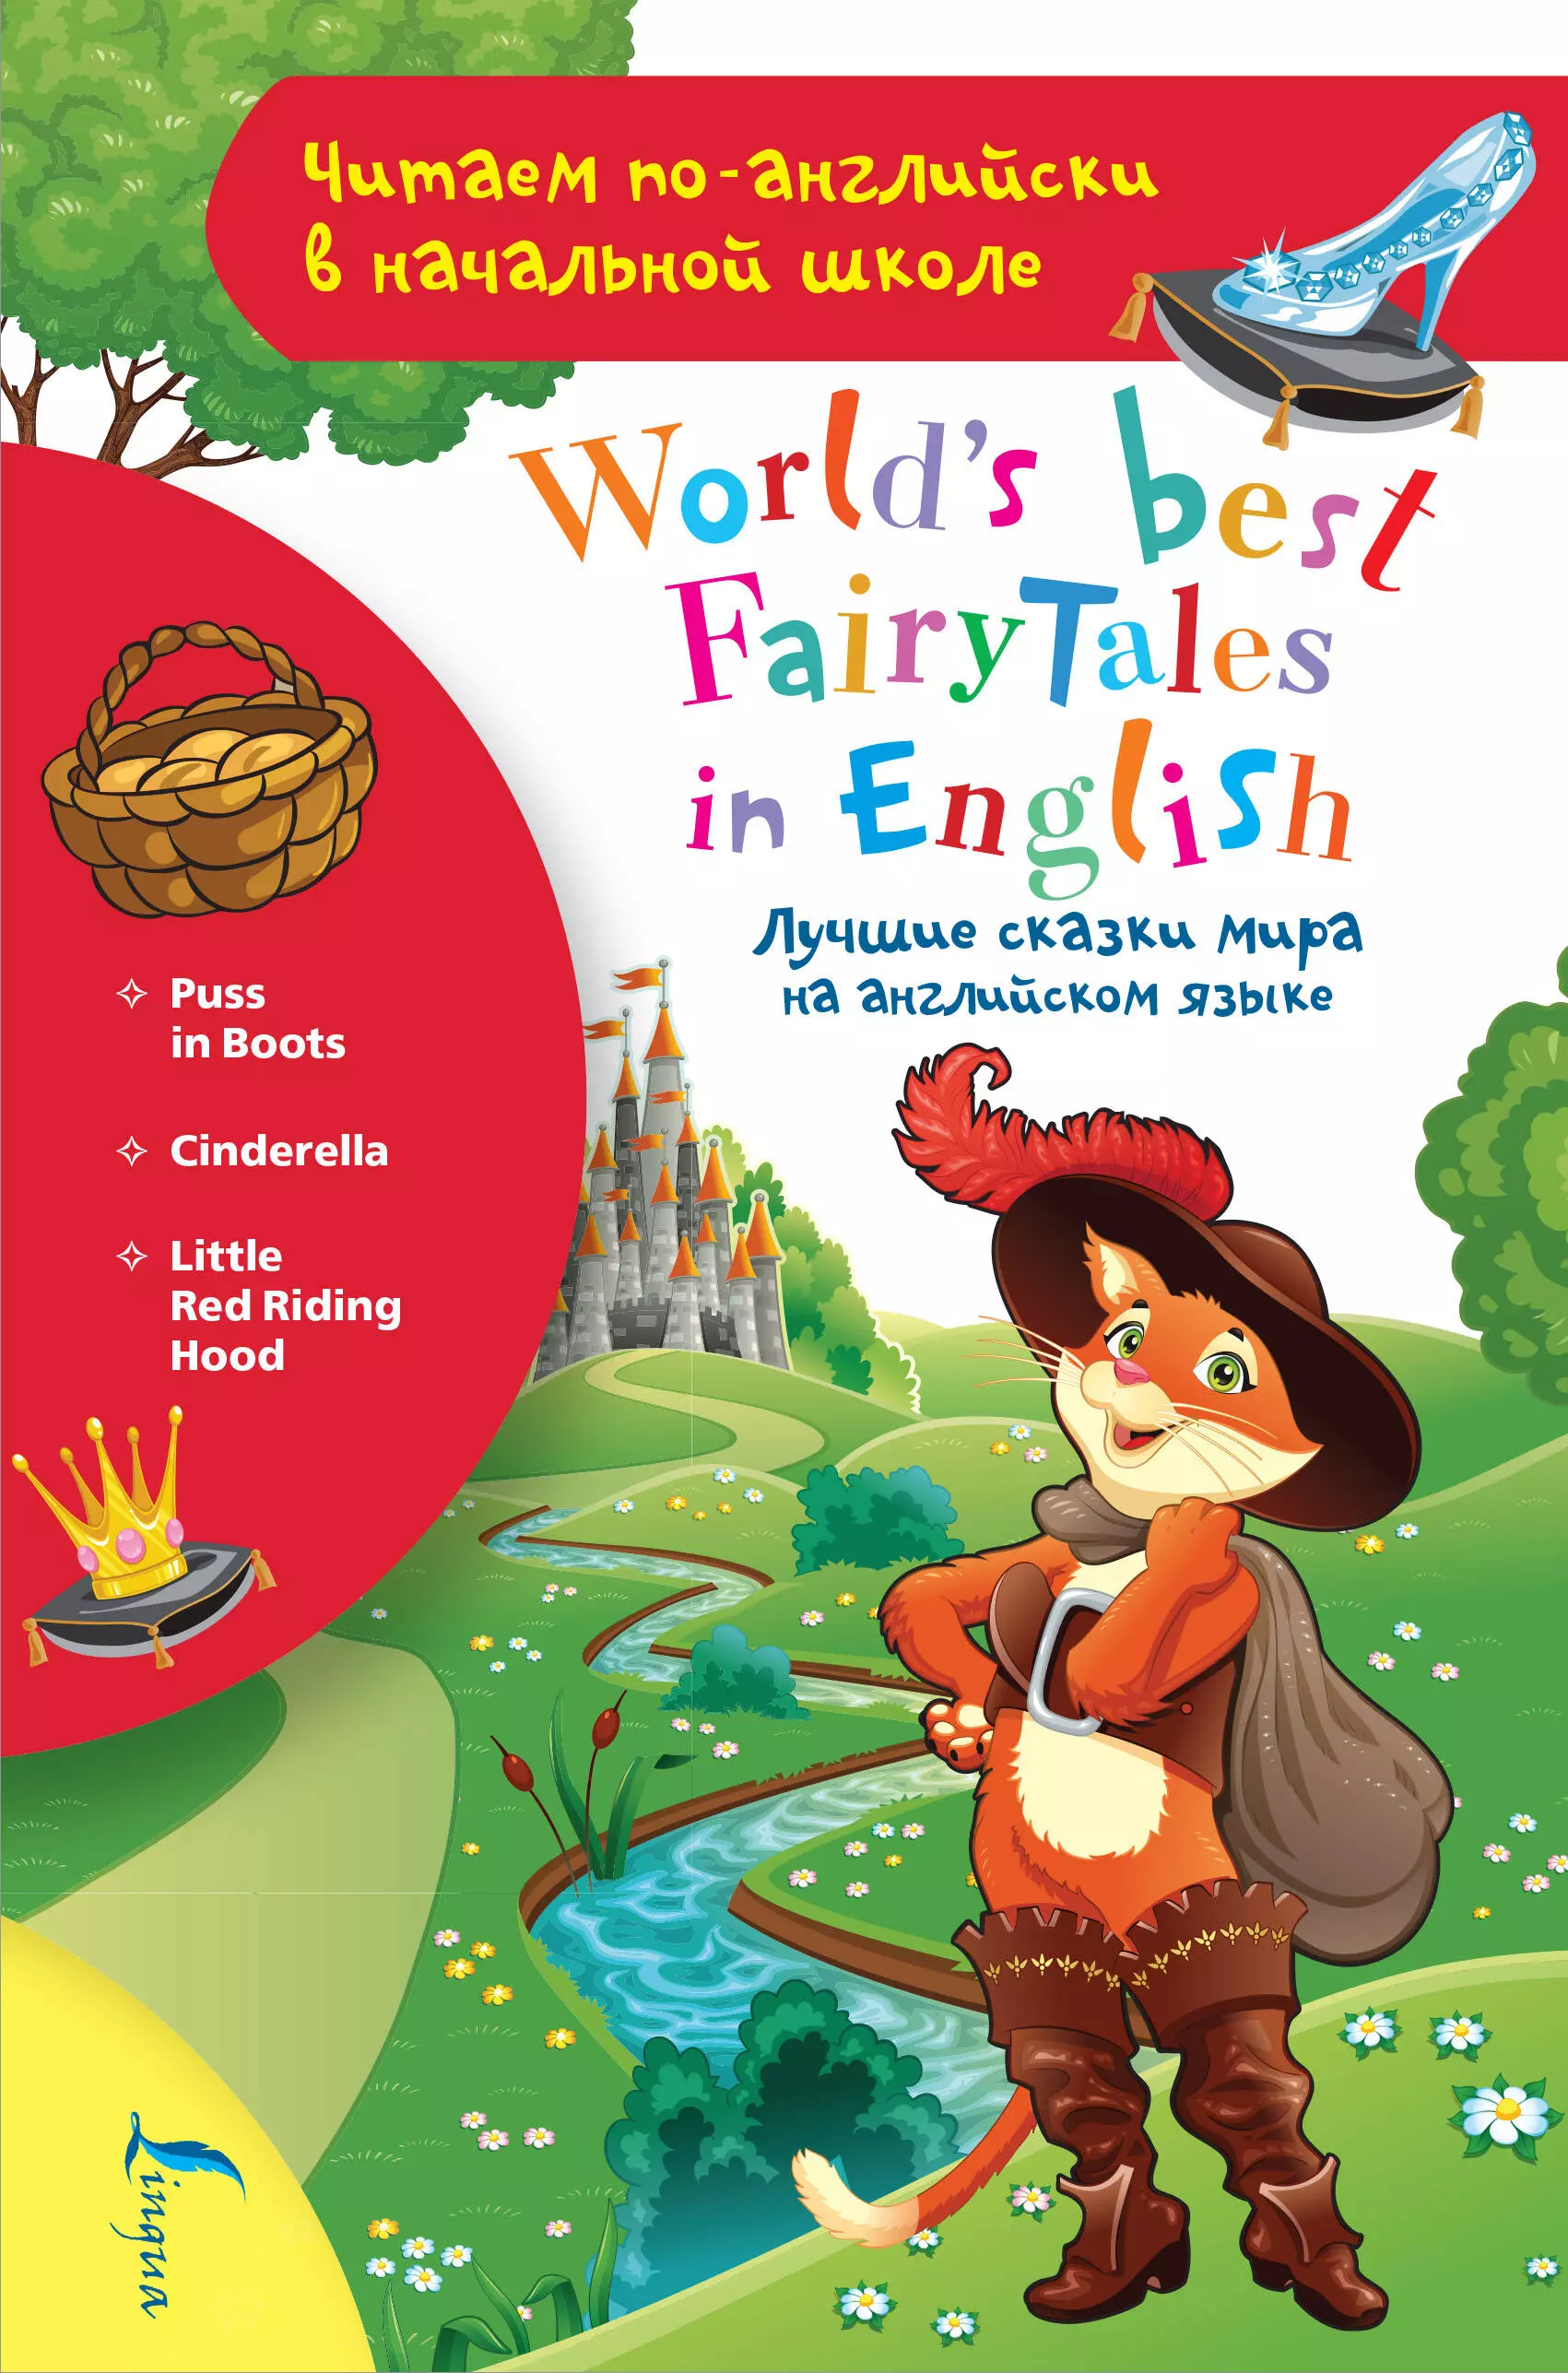  - Лучшие сказки мира на английском языке / World's best fairytales in English